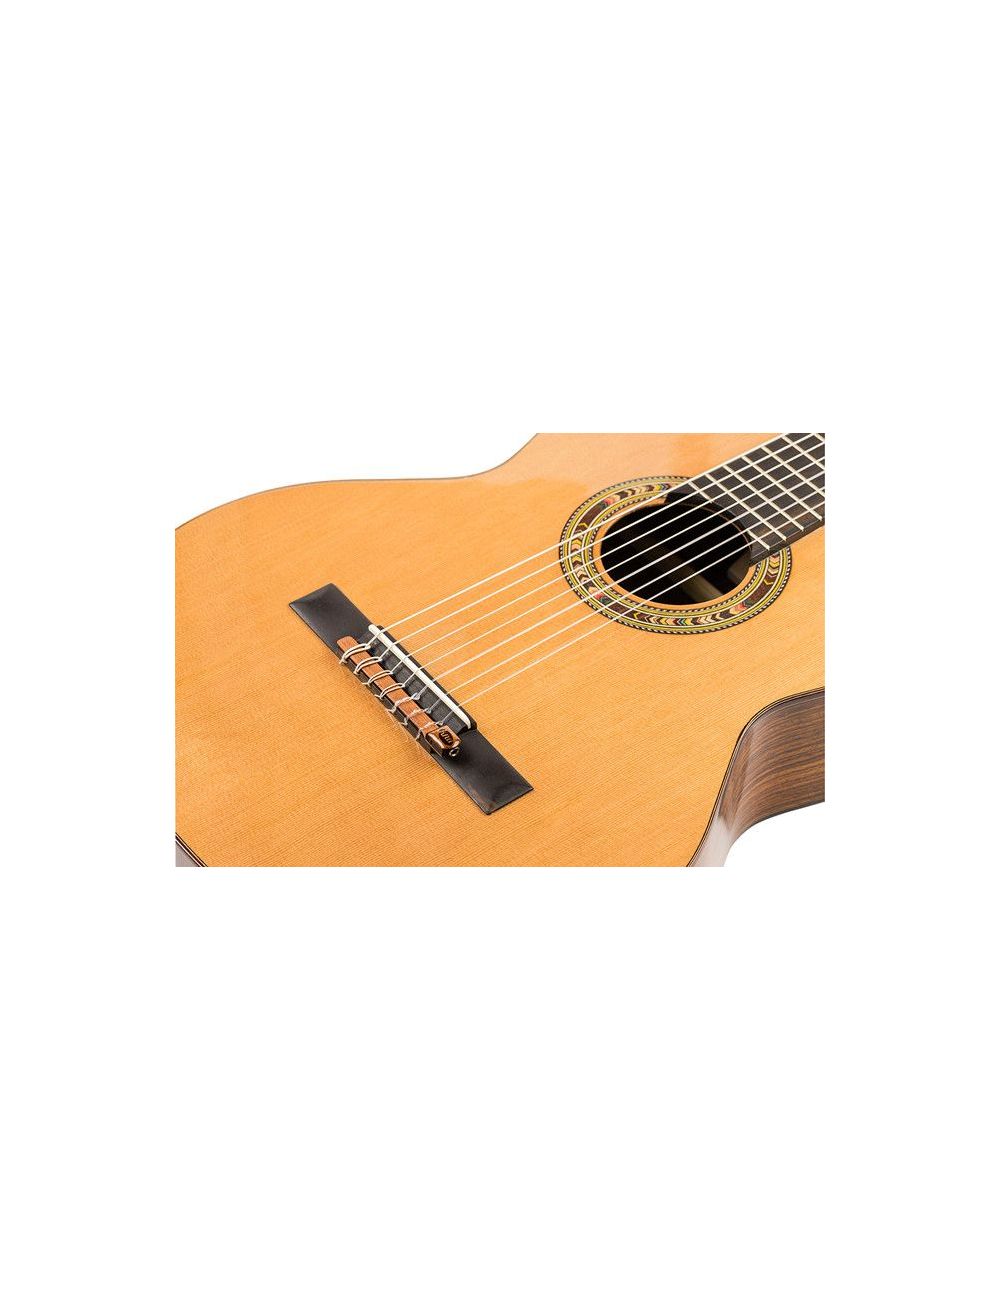 KNA NG-7S 7 strings Classical guitar pickup KNA NG-7S Pickups and Preamps